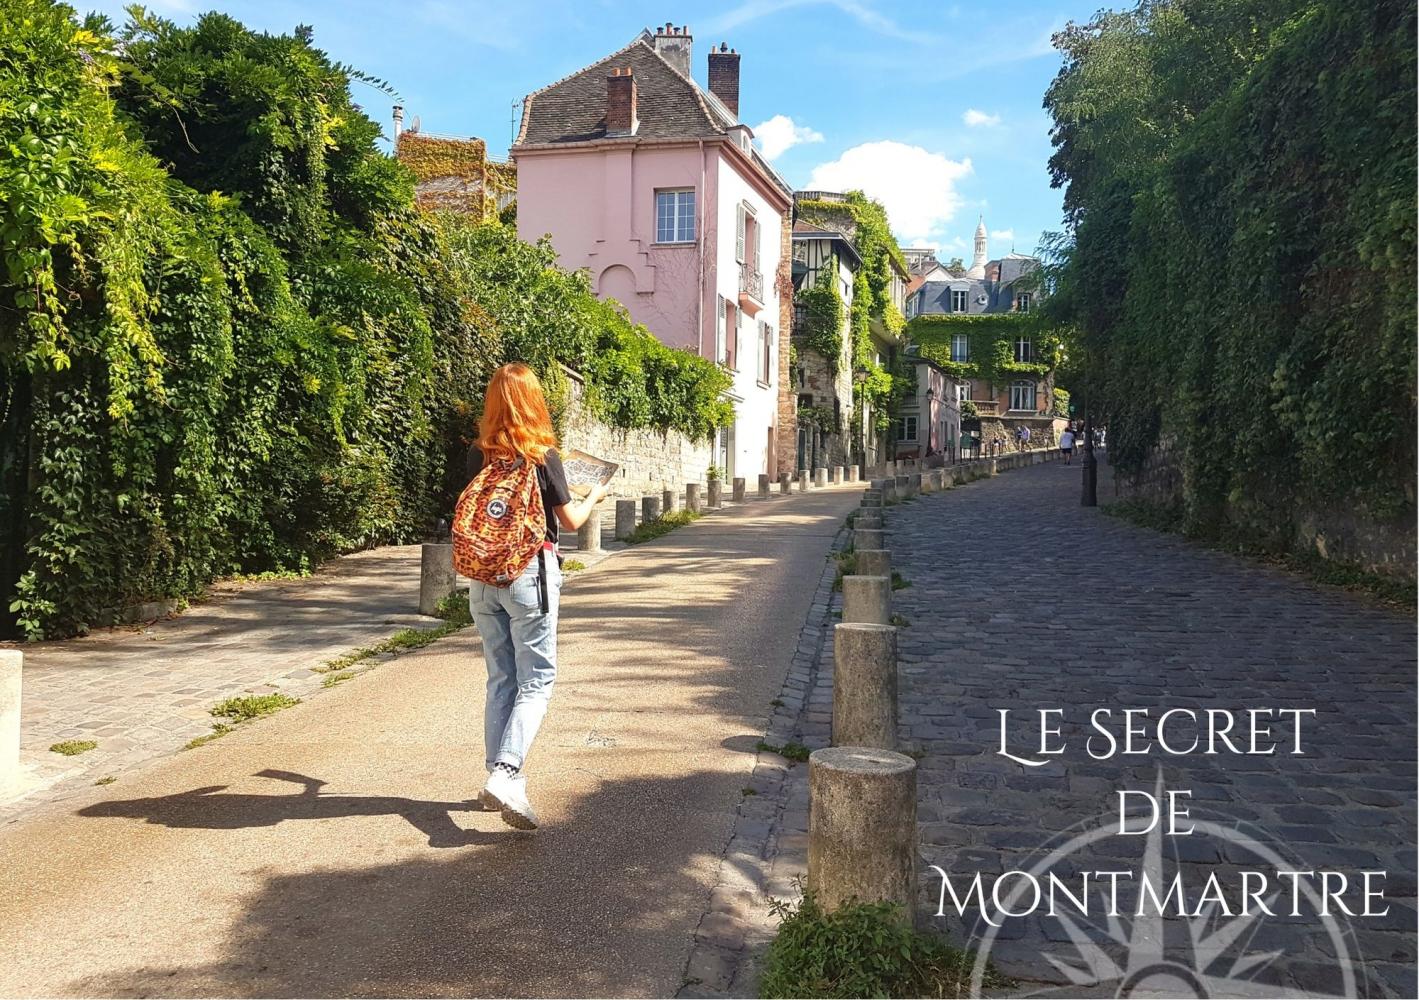 Le Secret de Montmartre